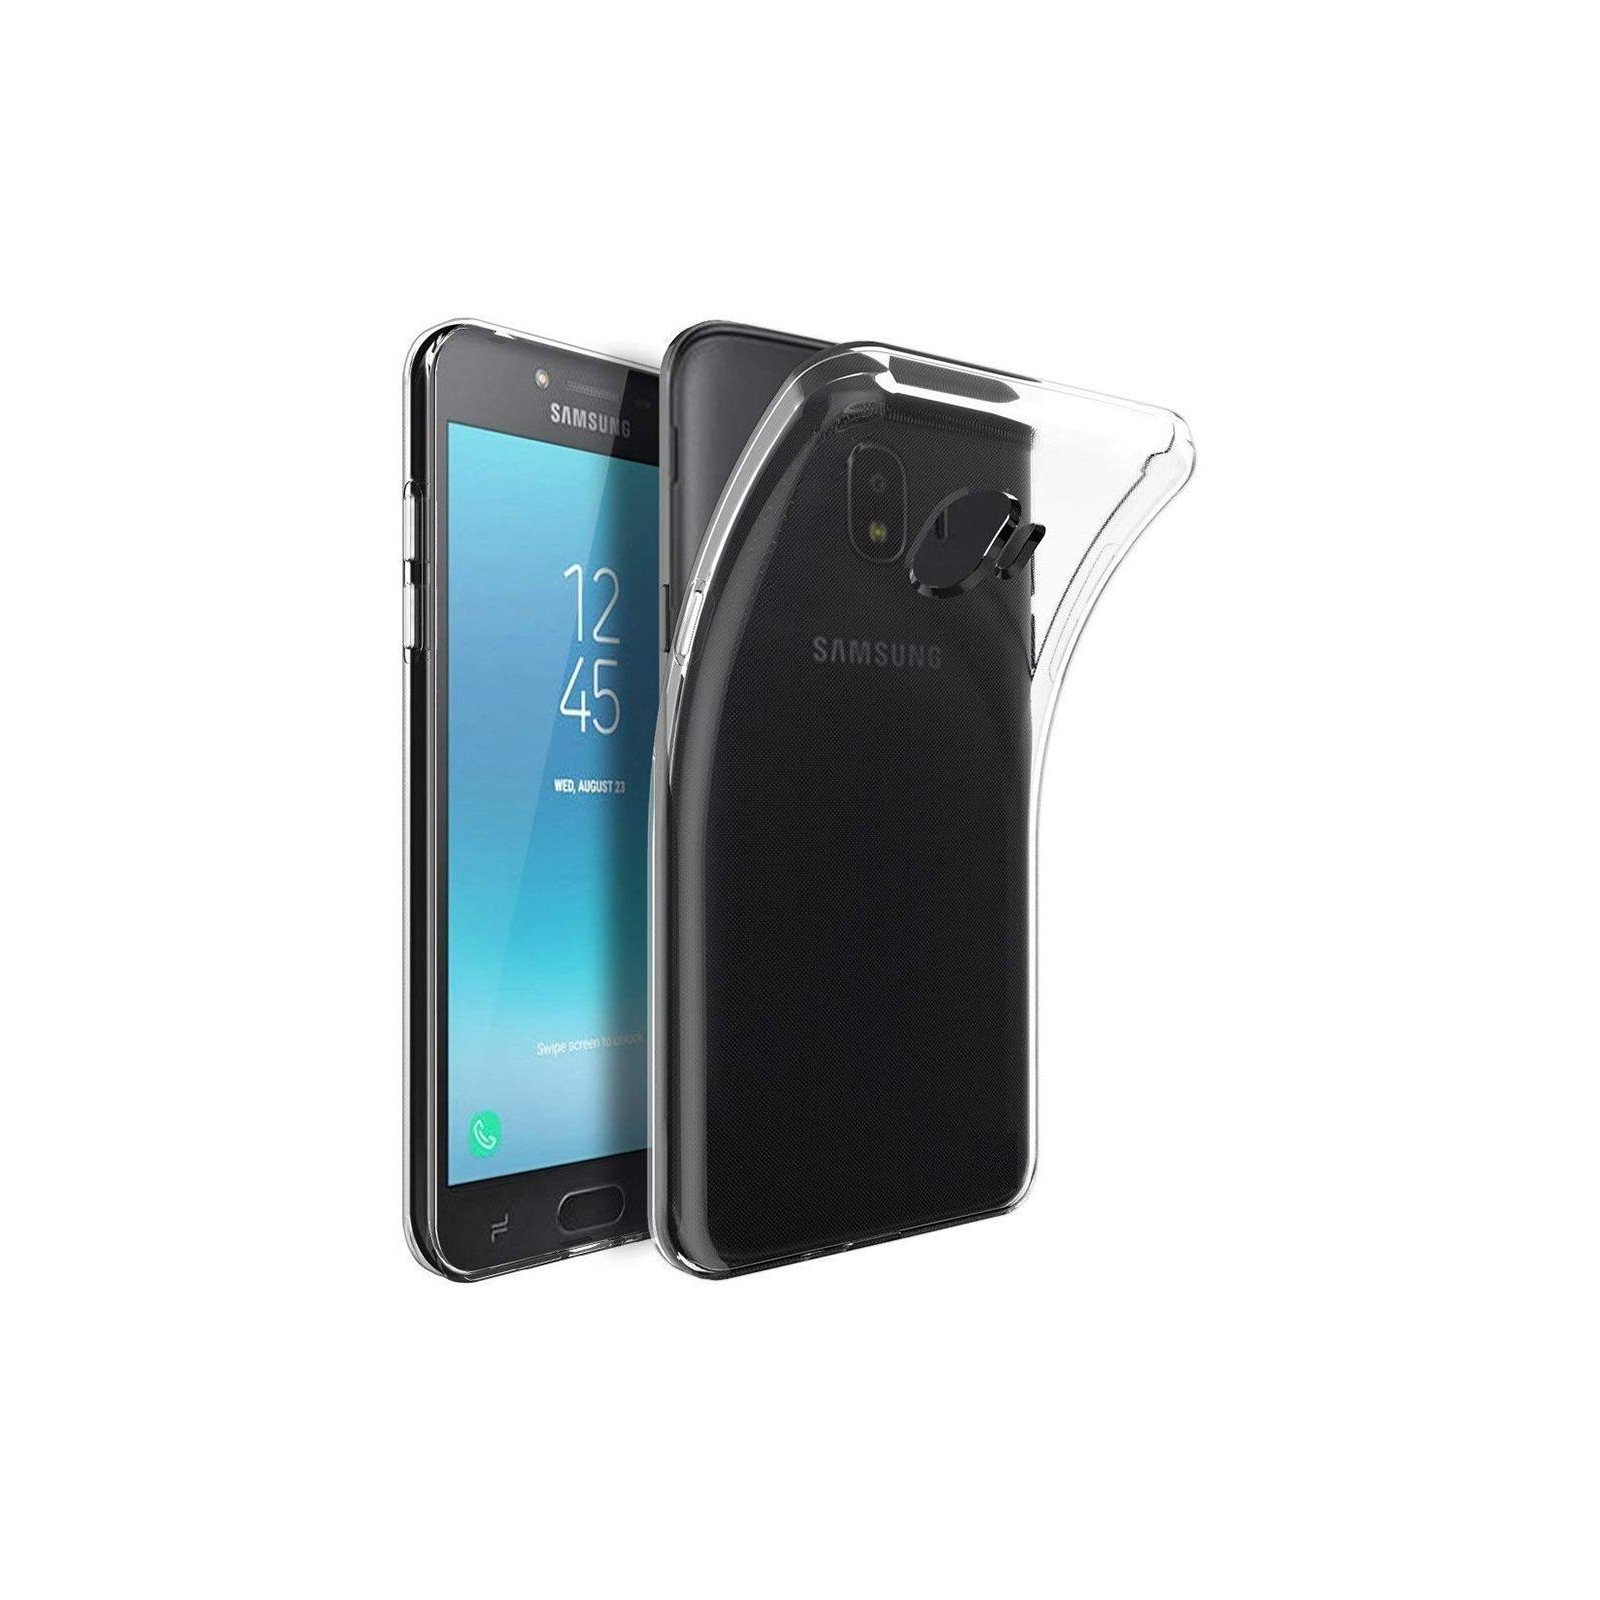 Чехол для мобильного телефона Laudtec для Samsung Galaxy J2 Core Clear tpu (Transperent) (LC-J2C)